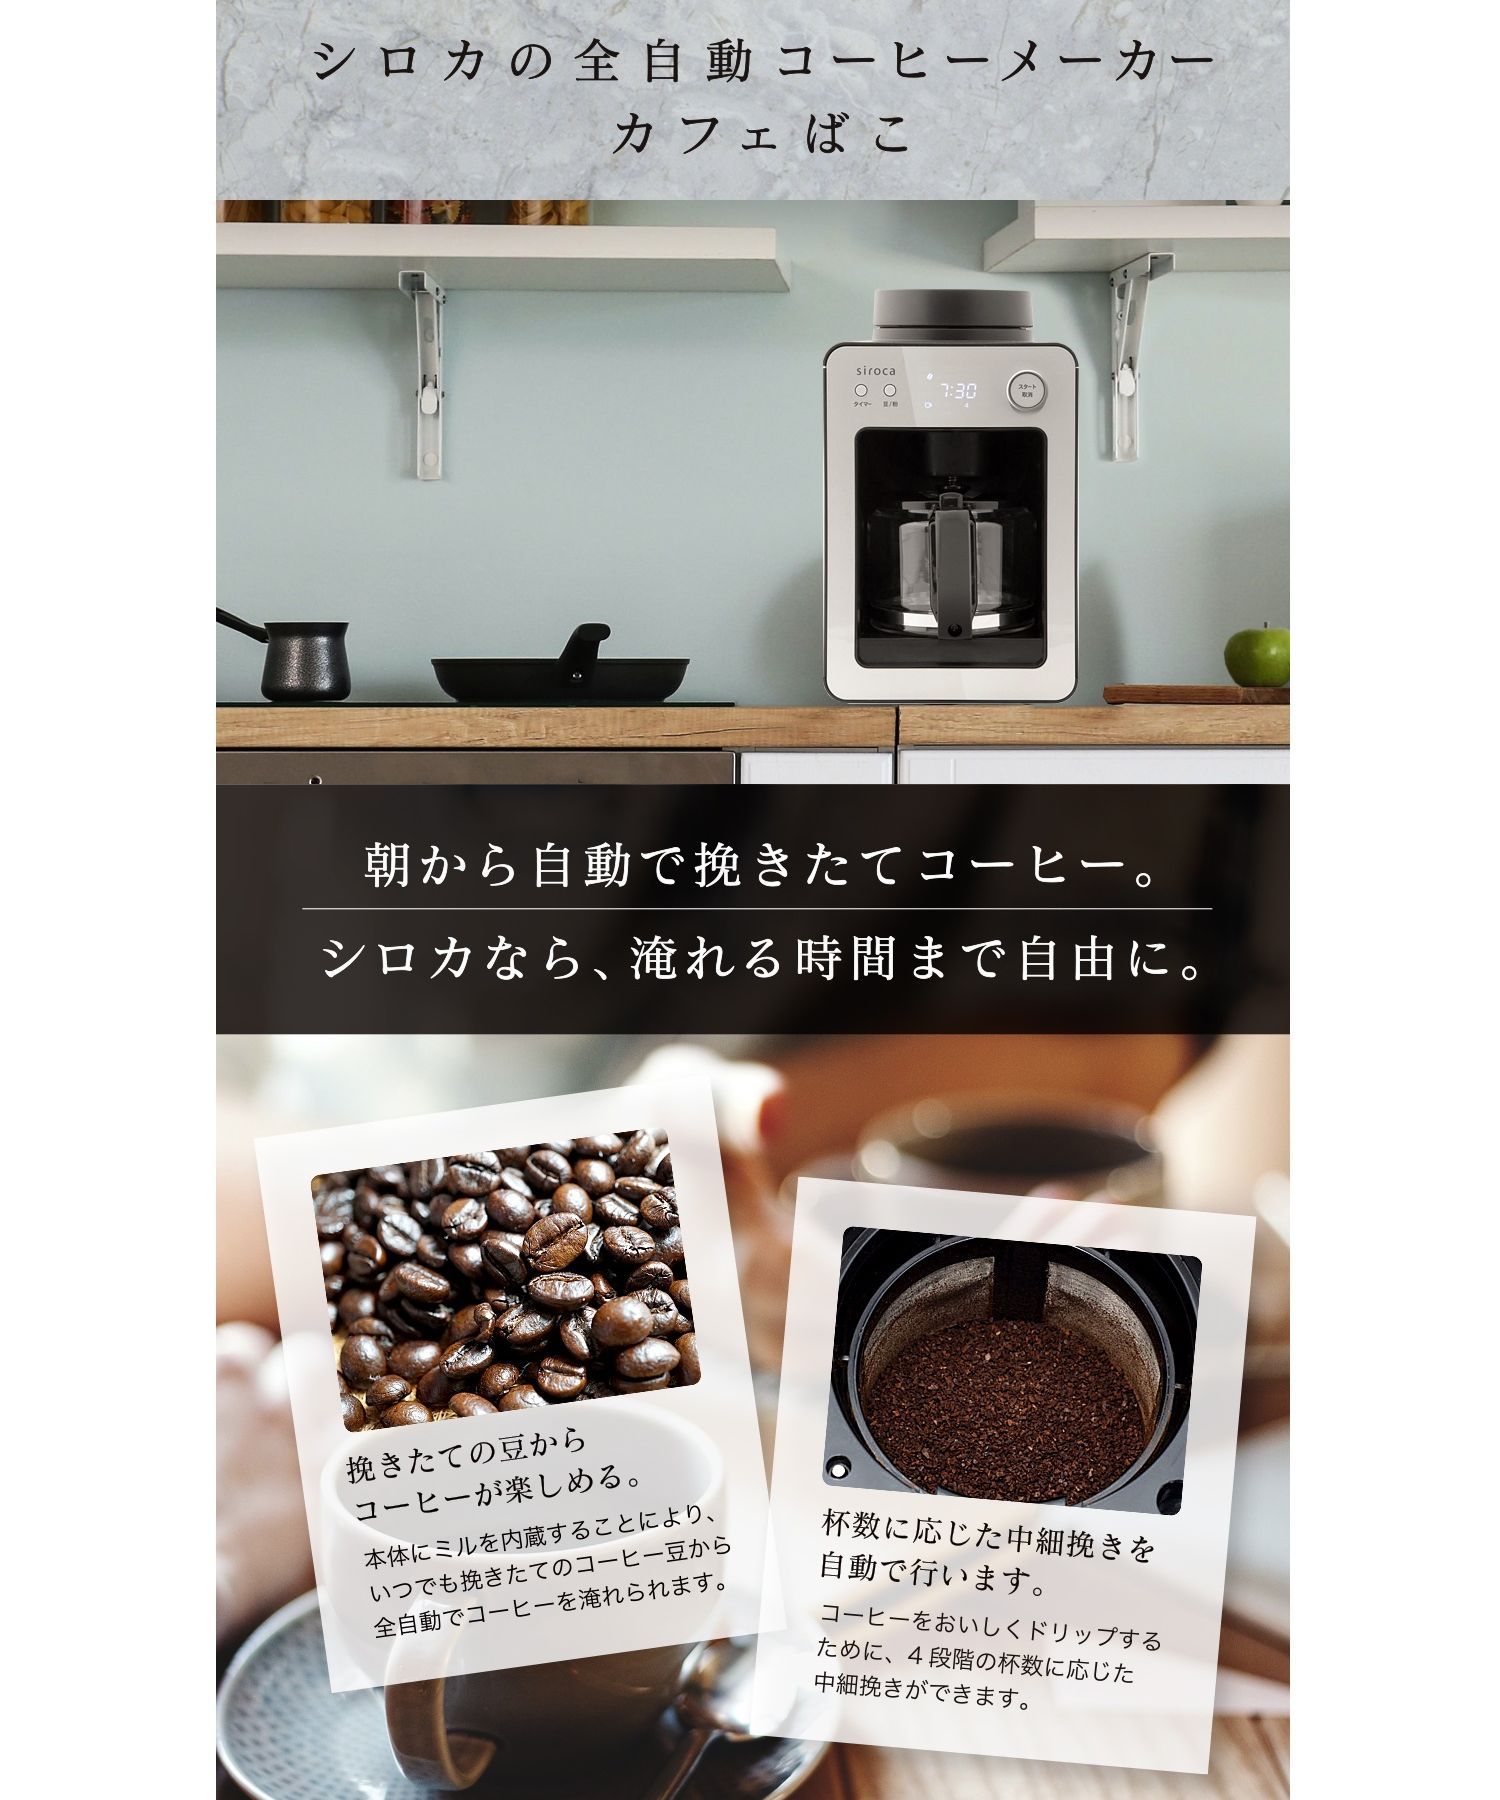 siroca】全自動コーヒーメーカー カフェばこ(ガラスサーバー) SC-A351 